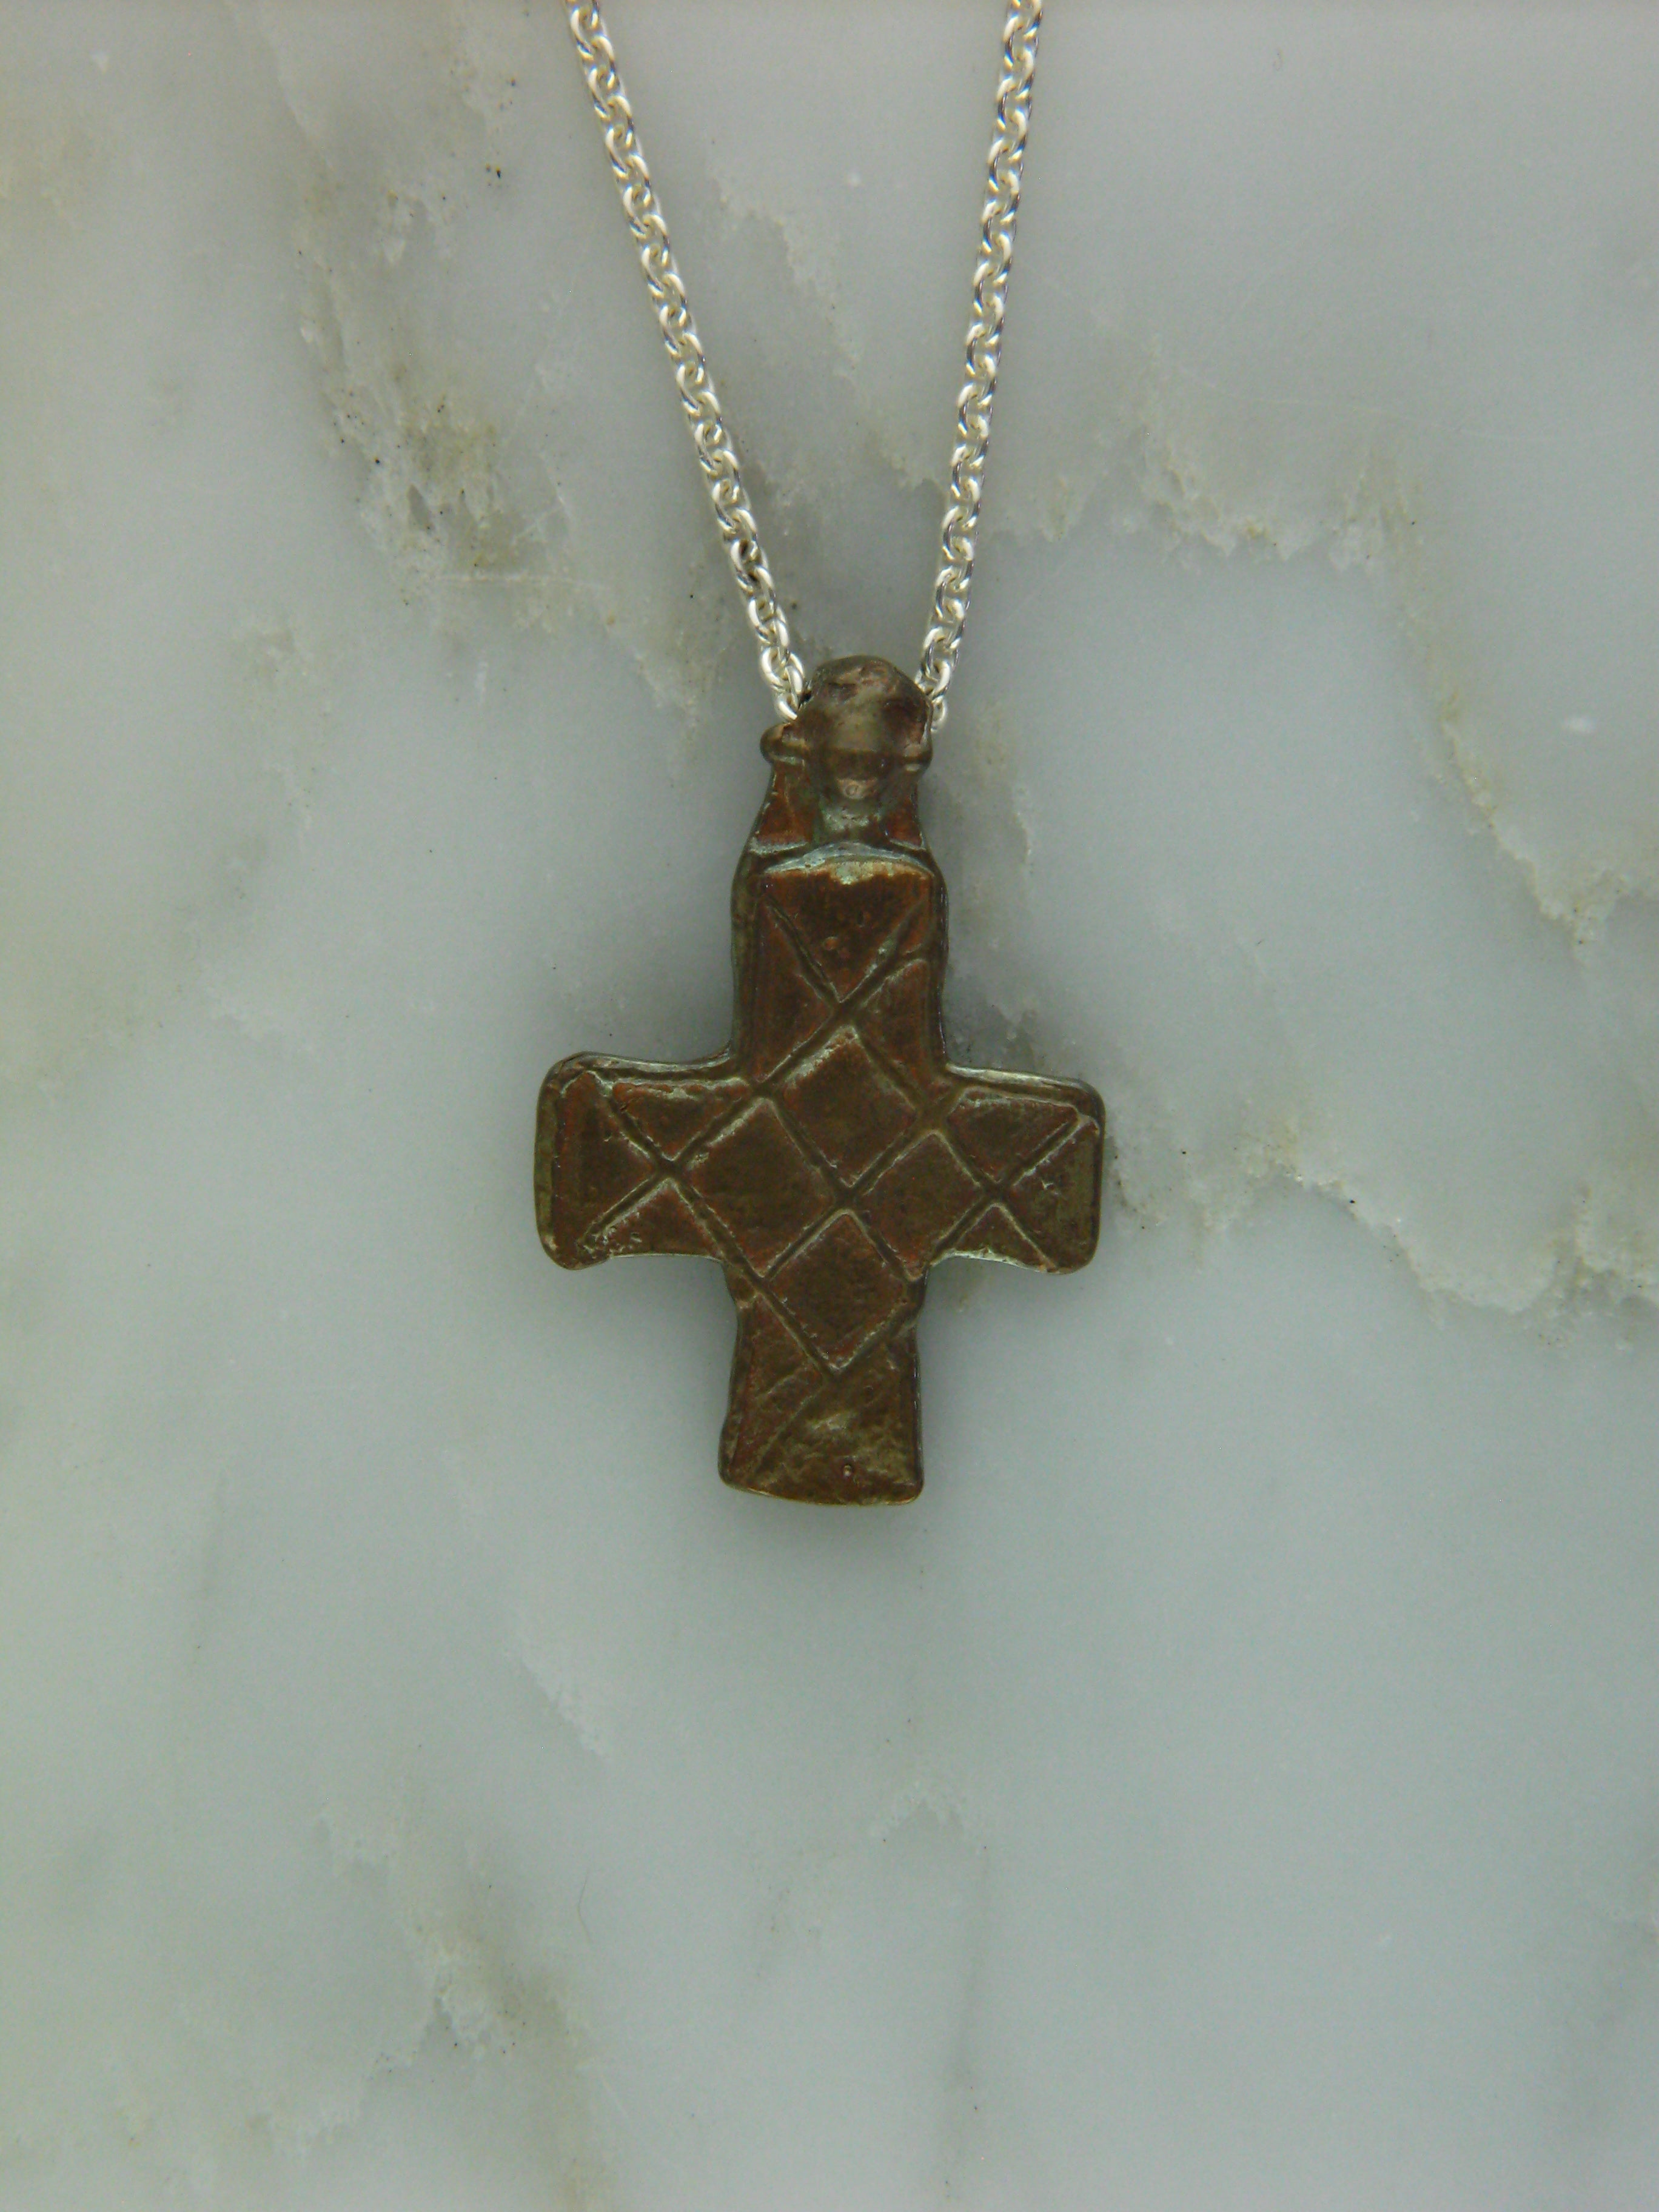 Ancient Cross #07 "Peter's Cross"